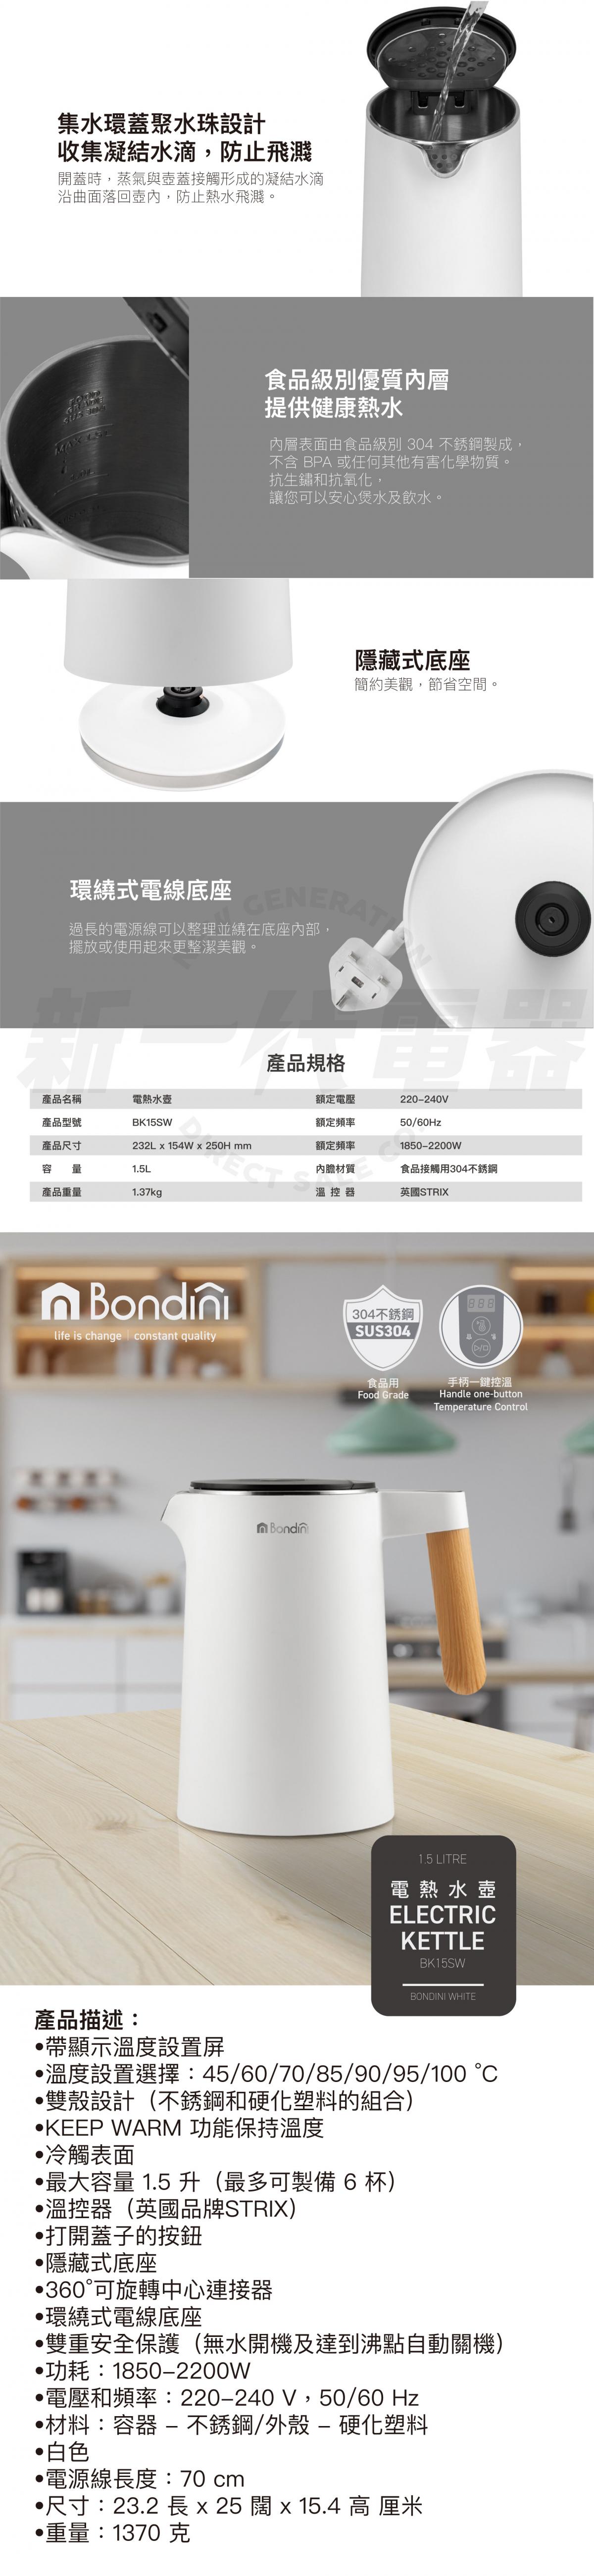 Bondini BK15SW 電熱水壺 (白色)